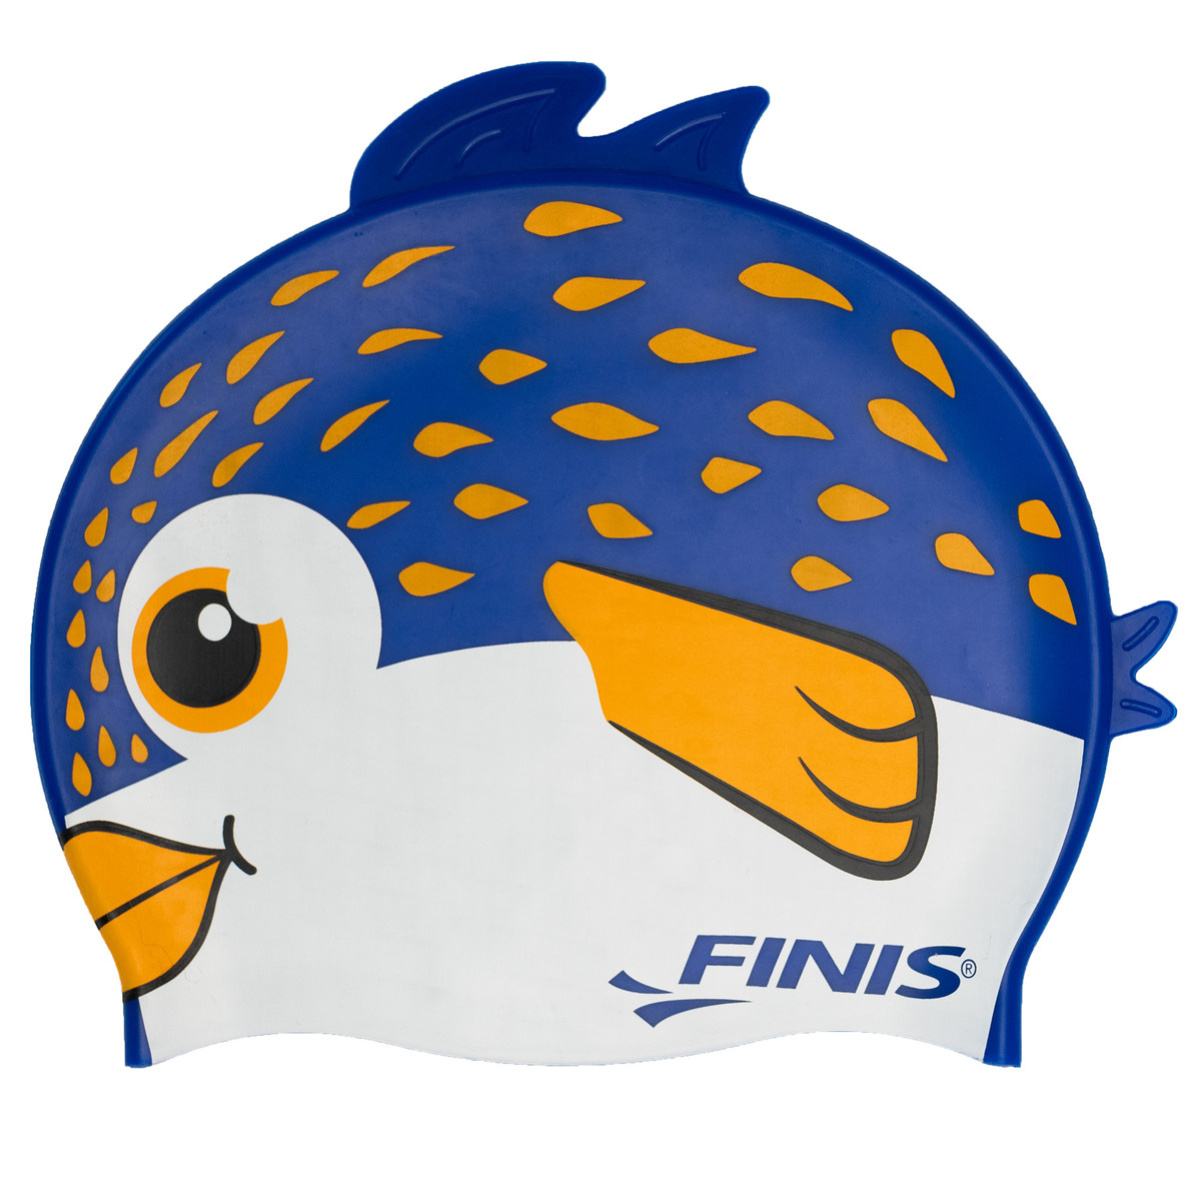 Finis Animal Heads Puffer Fish Modrá + prodejny Praha, Brno, Plzeň a Ostrava výměna a vrácení do 30 dnů s poštovným zdarma